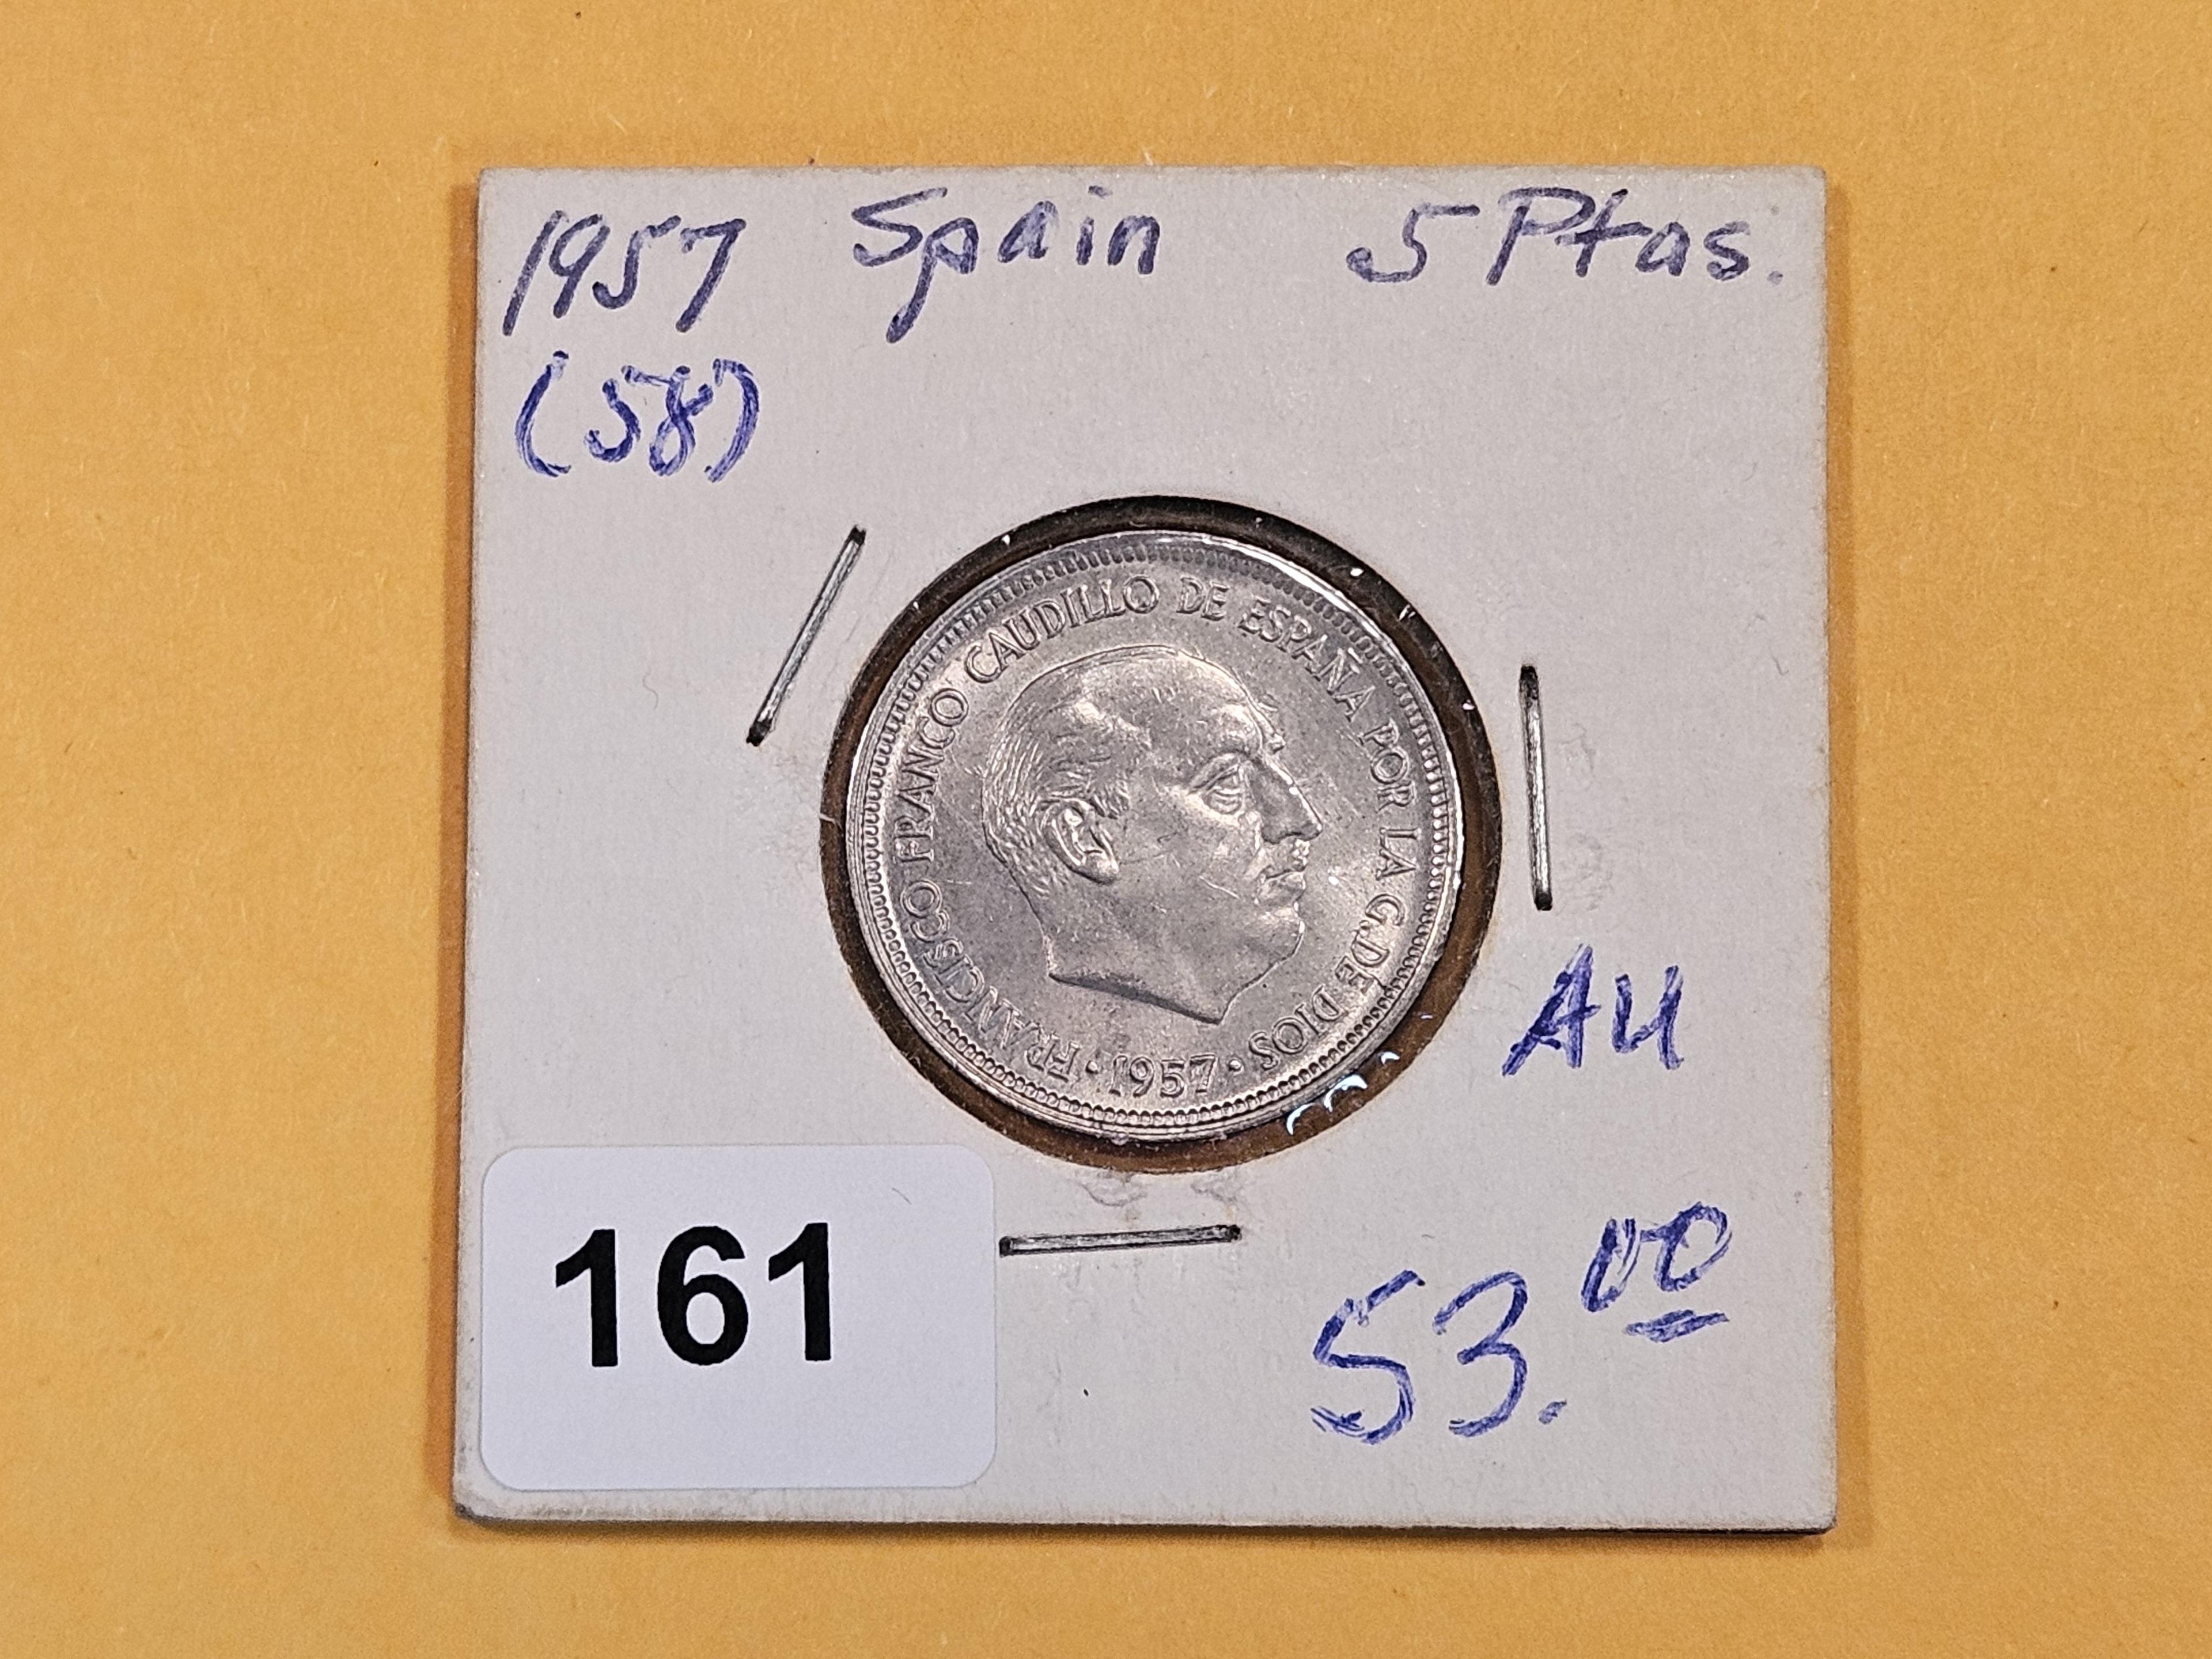 Better 1957 (58) Spain 5 pesetas